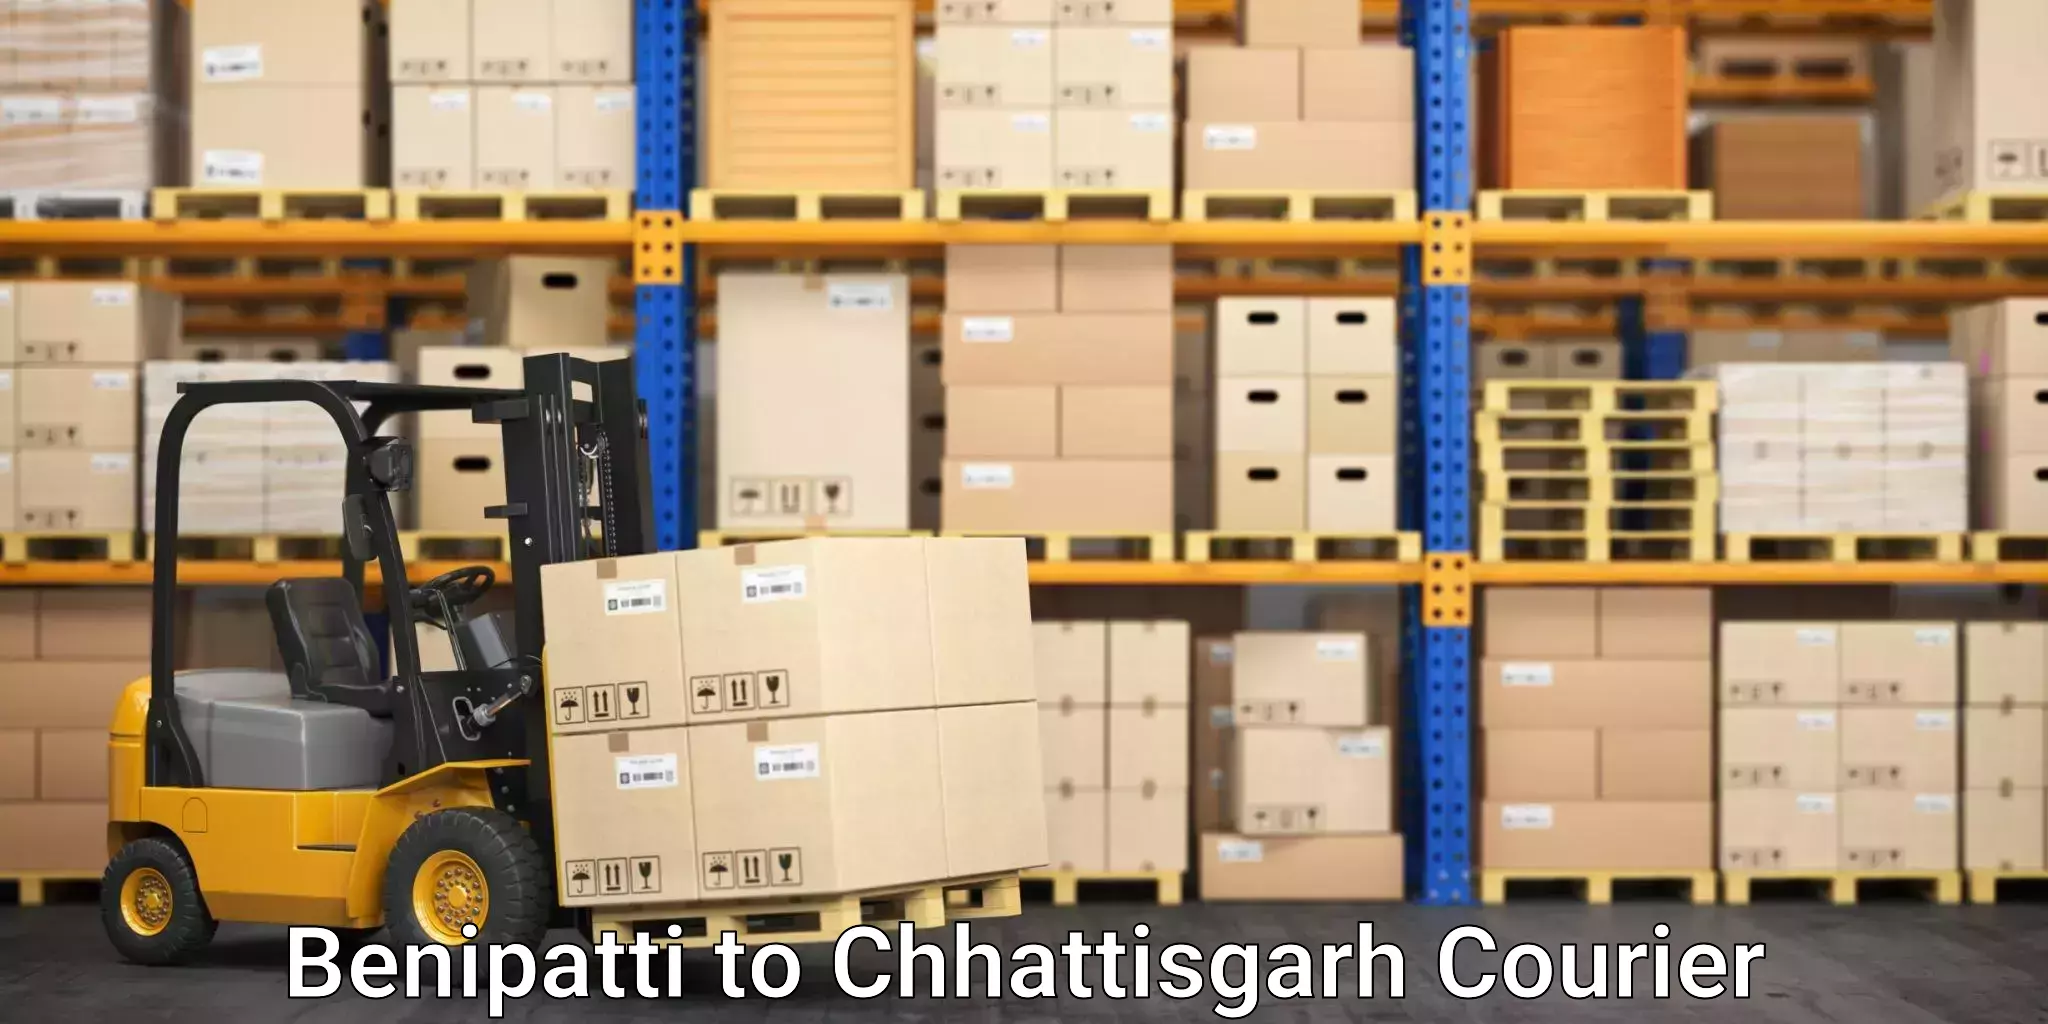 Furniture moving assistance in Benipatti to Chhattisgarh